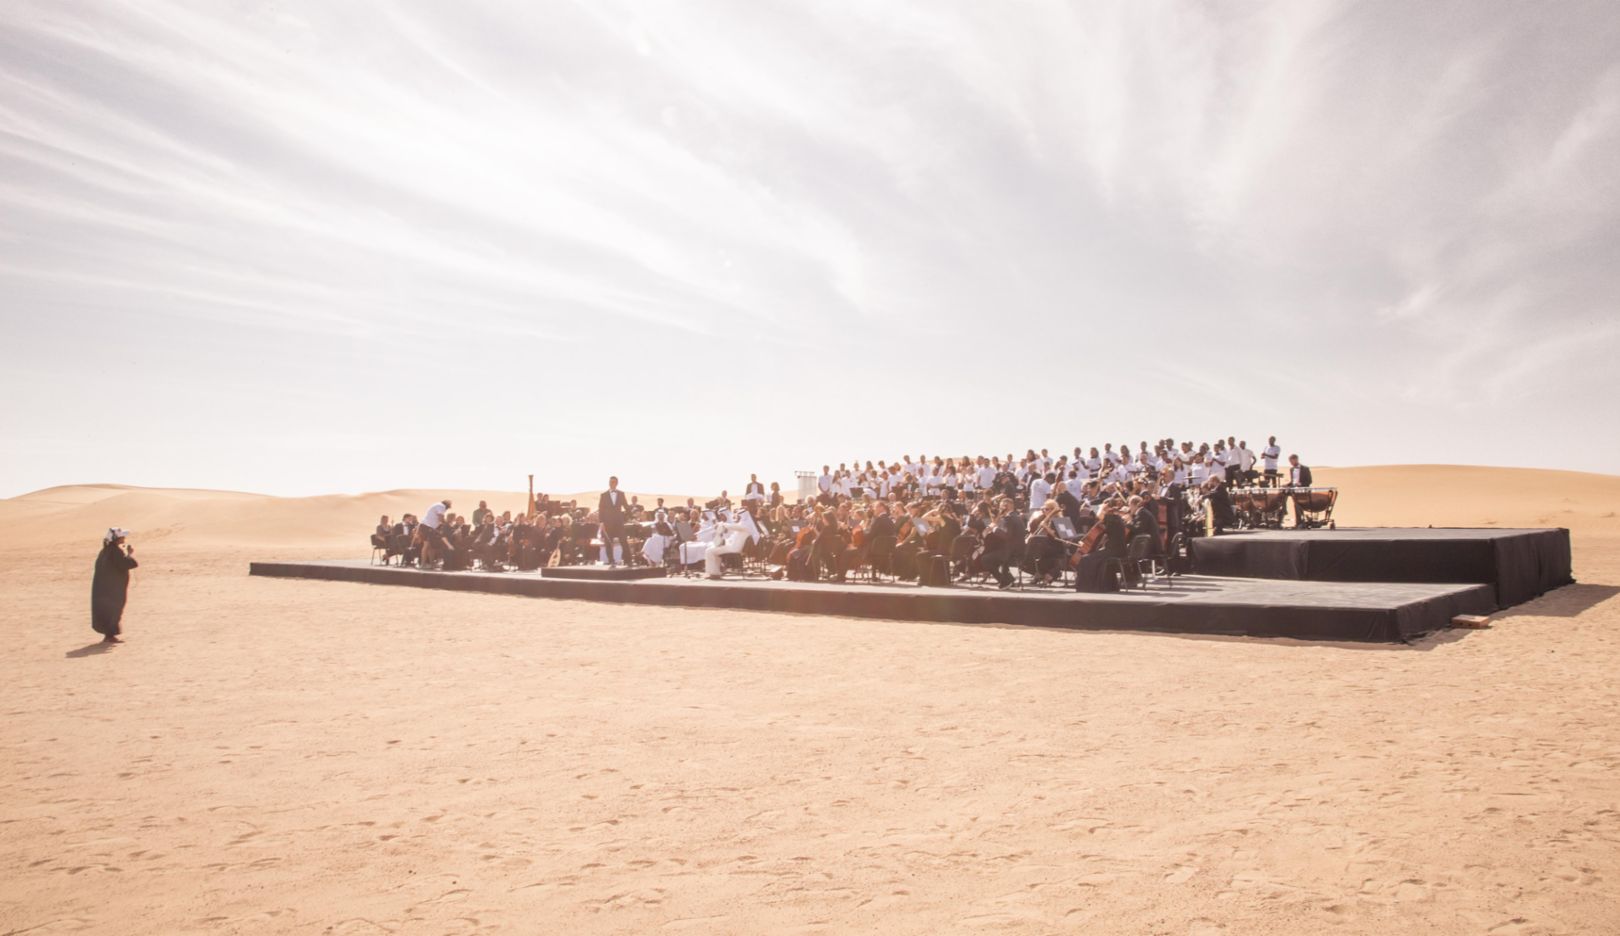 Für die Expo 2020 kamen 190 Musiker aus der ganzen Welt in der Wüste von Dubai zusammen, um die Nationalhymne des Gastgeberlandes zu spielen. Die Aufführung war Teil der Feierlichkeiten zum 47. Nationalfeiertag der Vereinigten Arabischen Emirate. Nayla Al Khaja hielt die Szene in Bewegtbild fest. Foto: Nayla Al Khaja Films